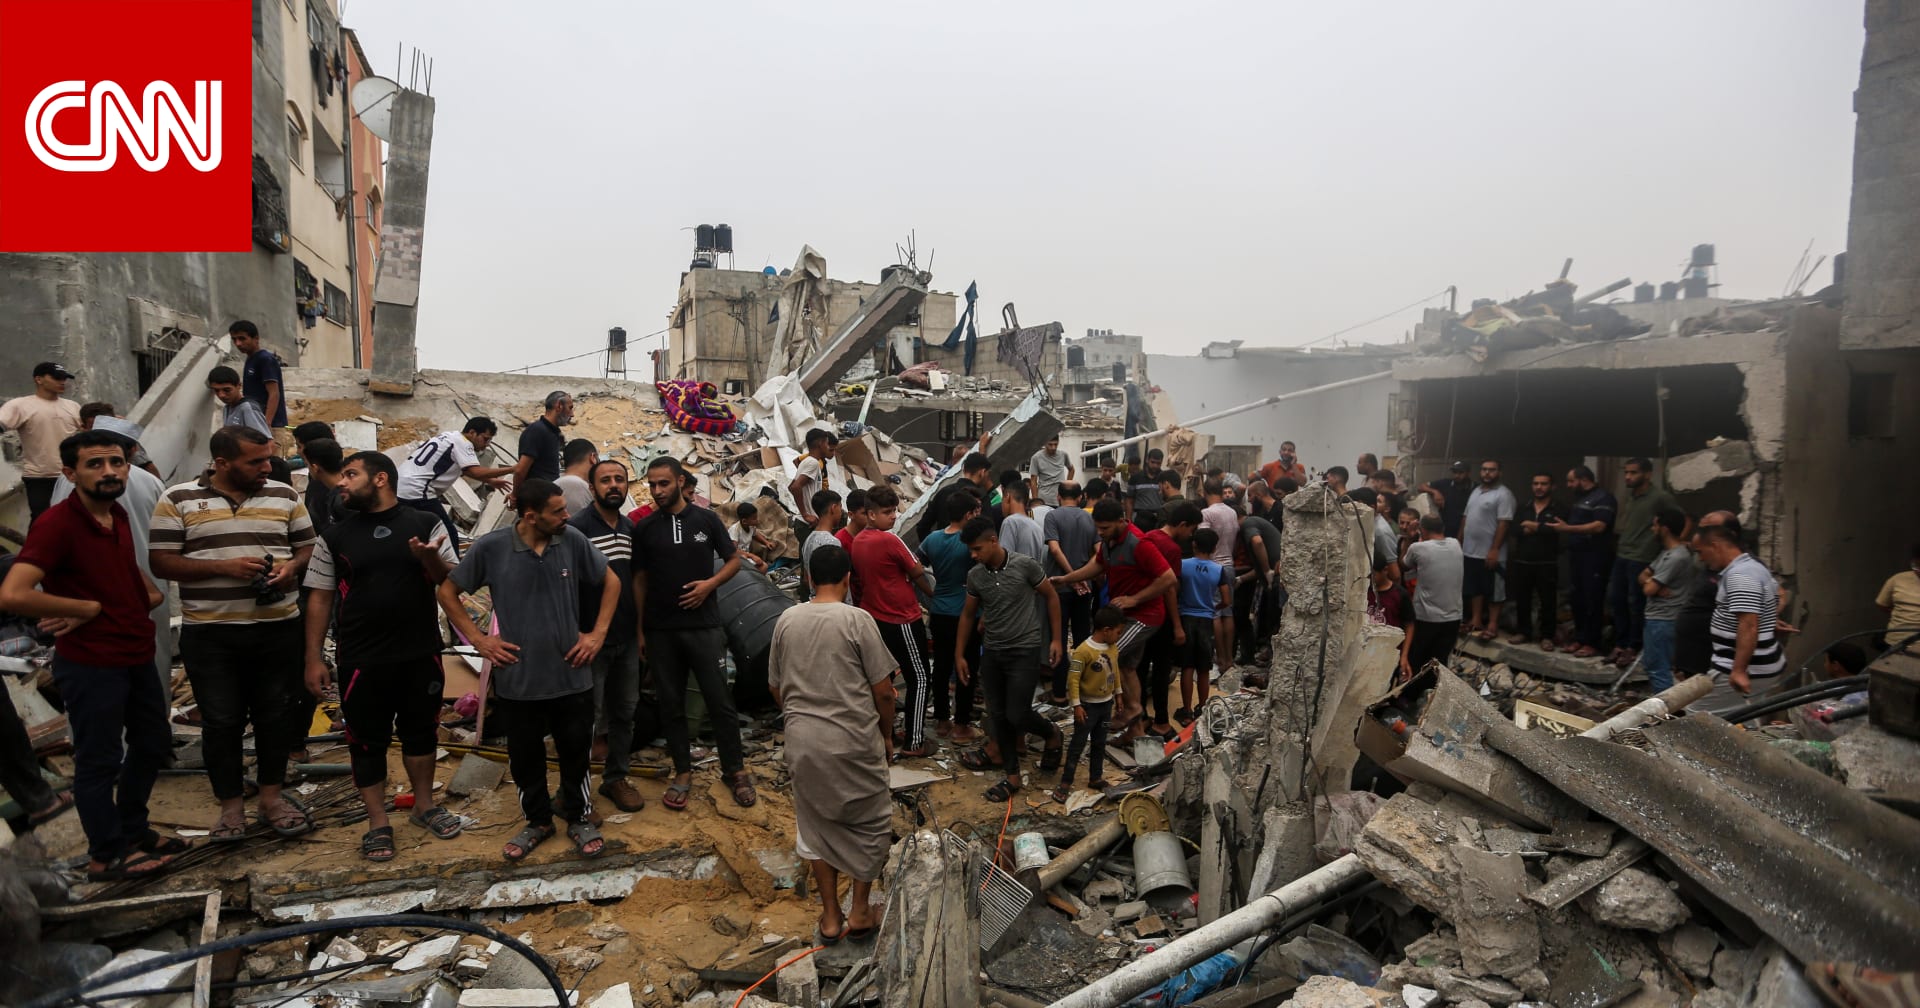 رئيس الصليب الأحمر: الوضع الإنساني في غزة "فشل كارثي" ويجب إيصال المساعدات لإنقاذ الأرواح